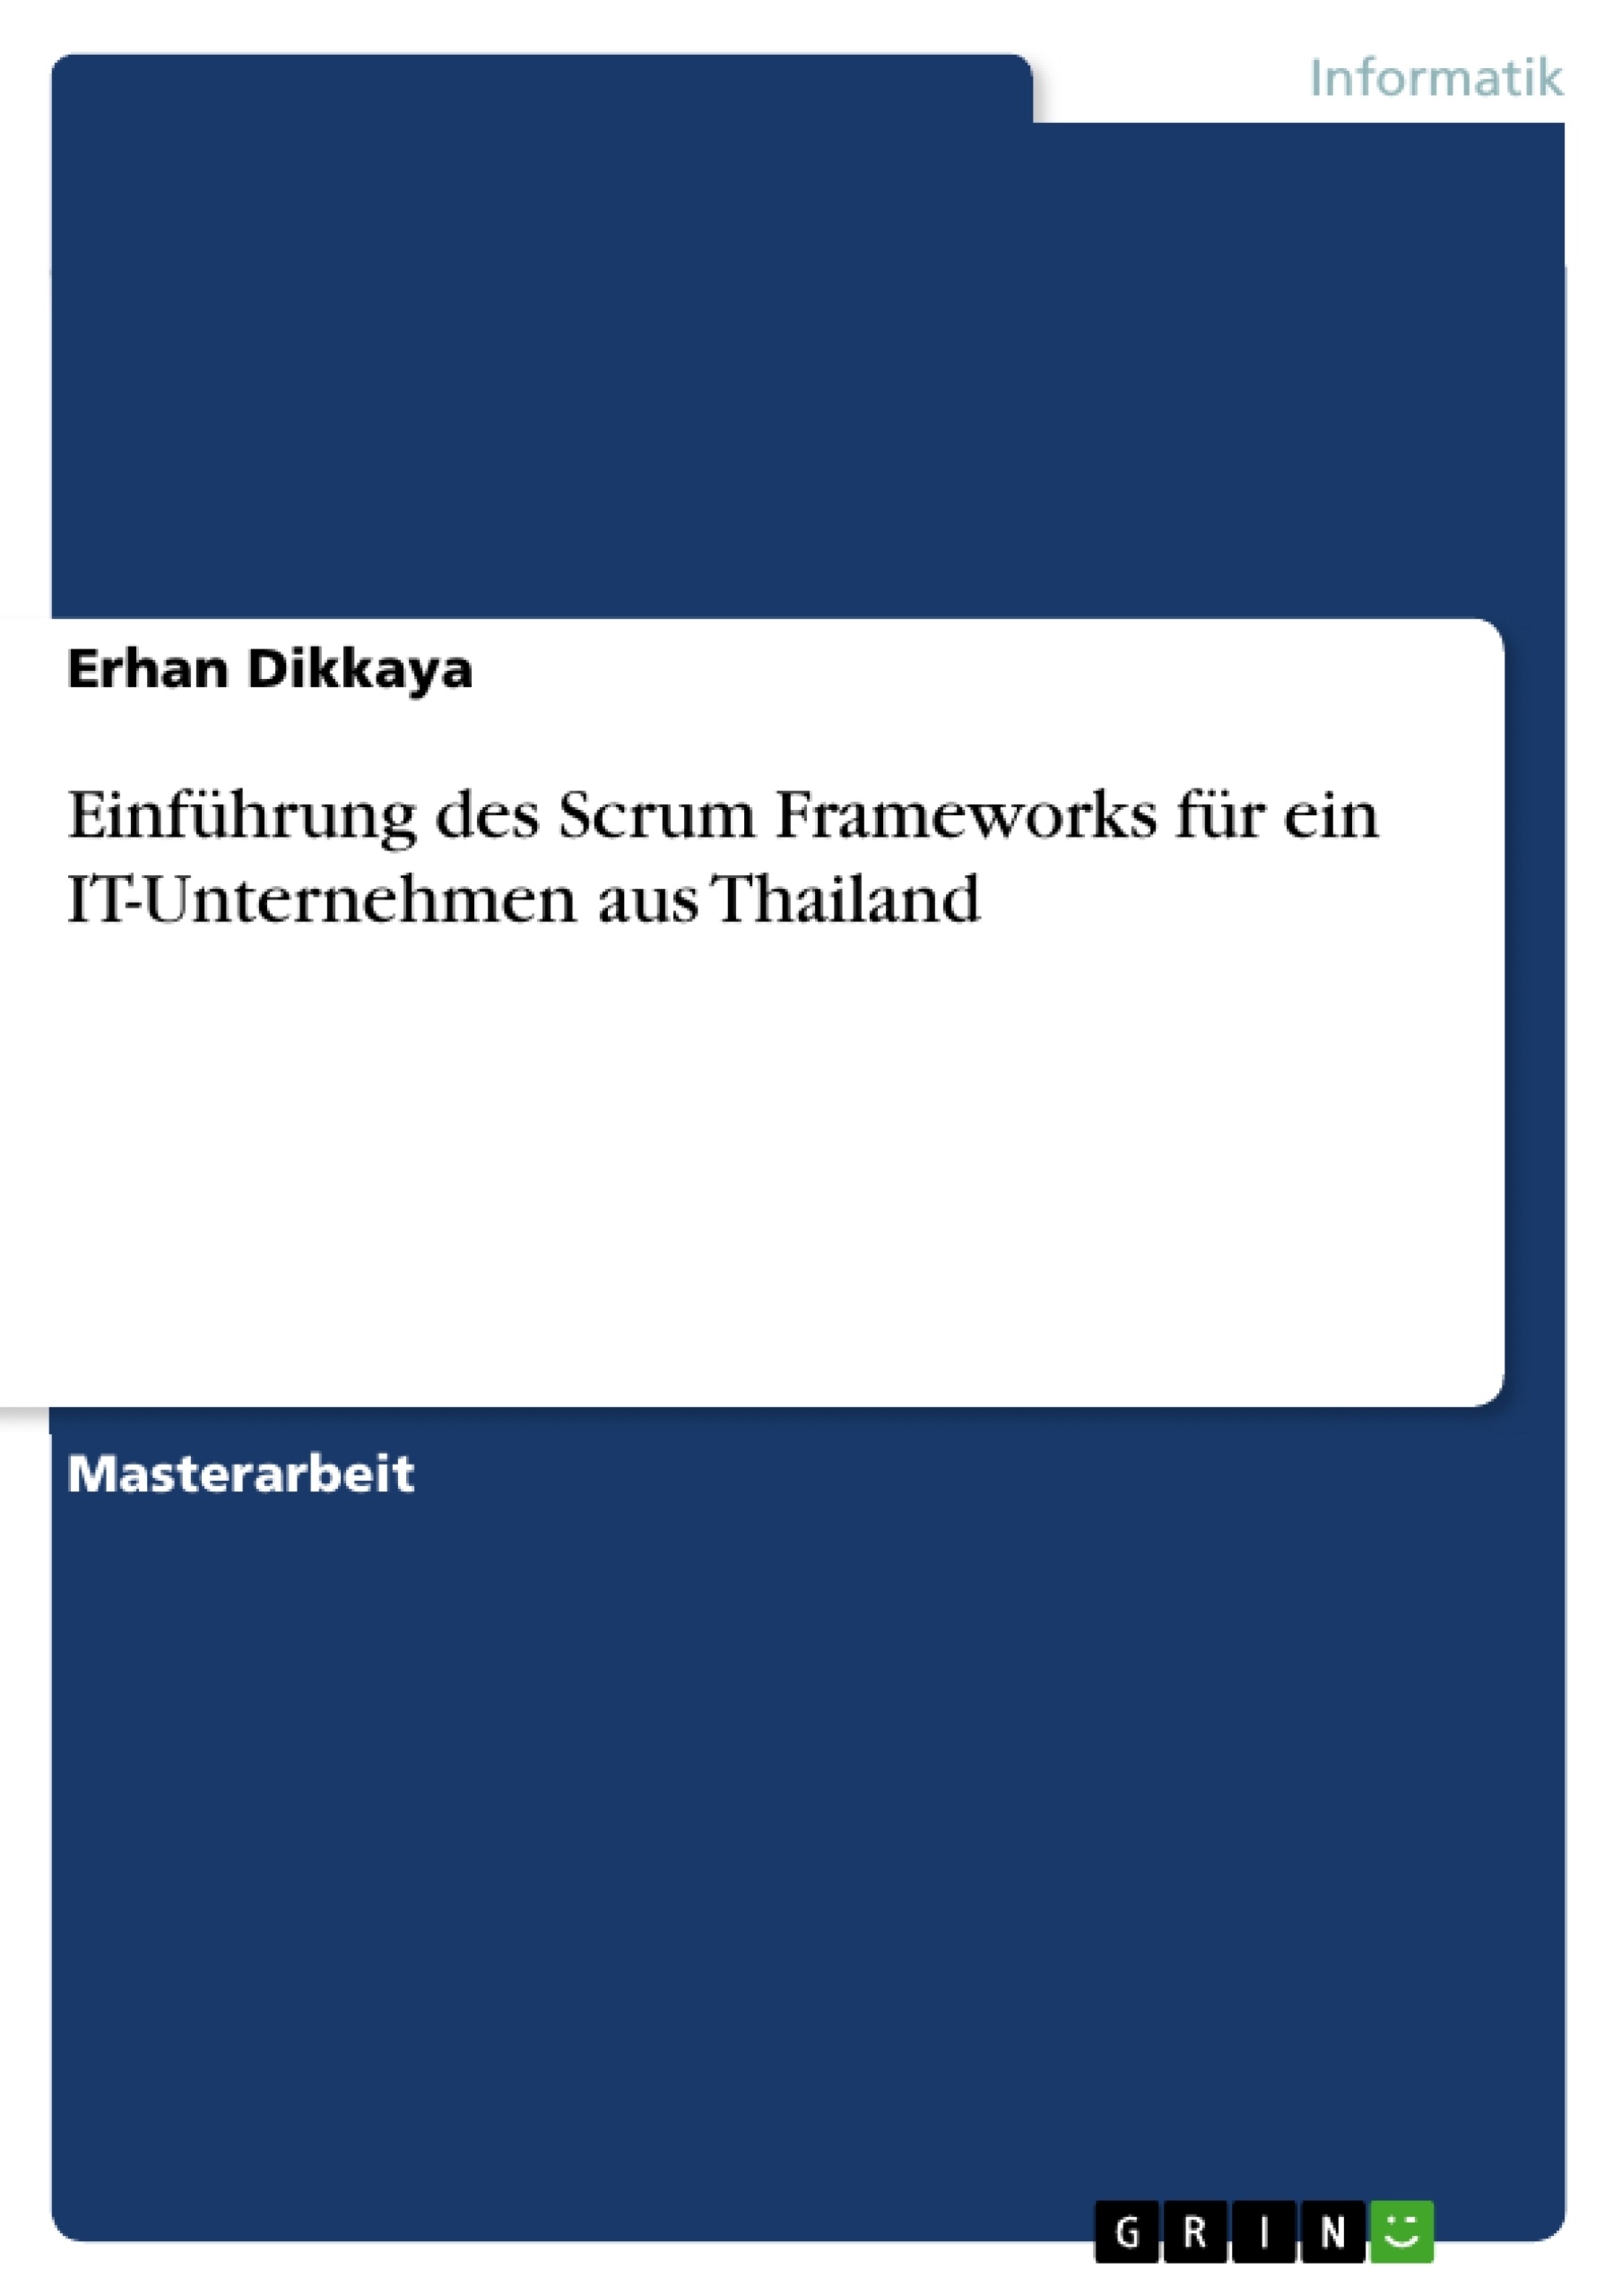 Titre: Einführung des Scrum Frameworks für ein IT-Unternehmen aus Thailand